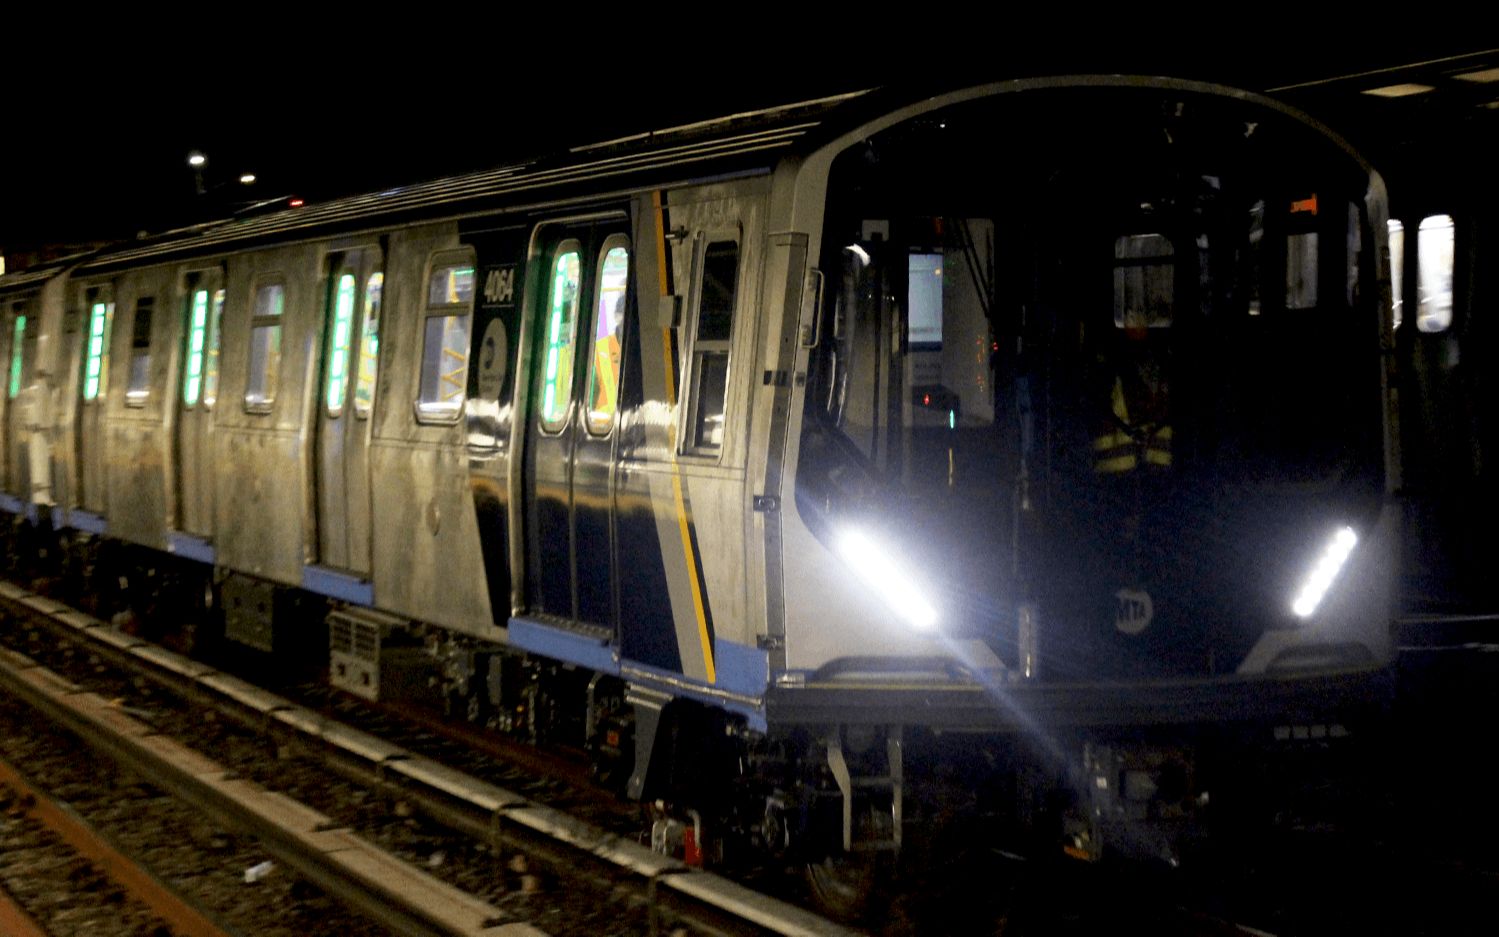 纽约地铁r211a型地铁新车在a/f/n线进行界限测试&附赠r46备用车